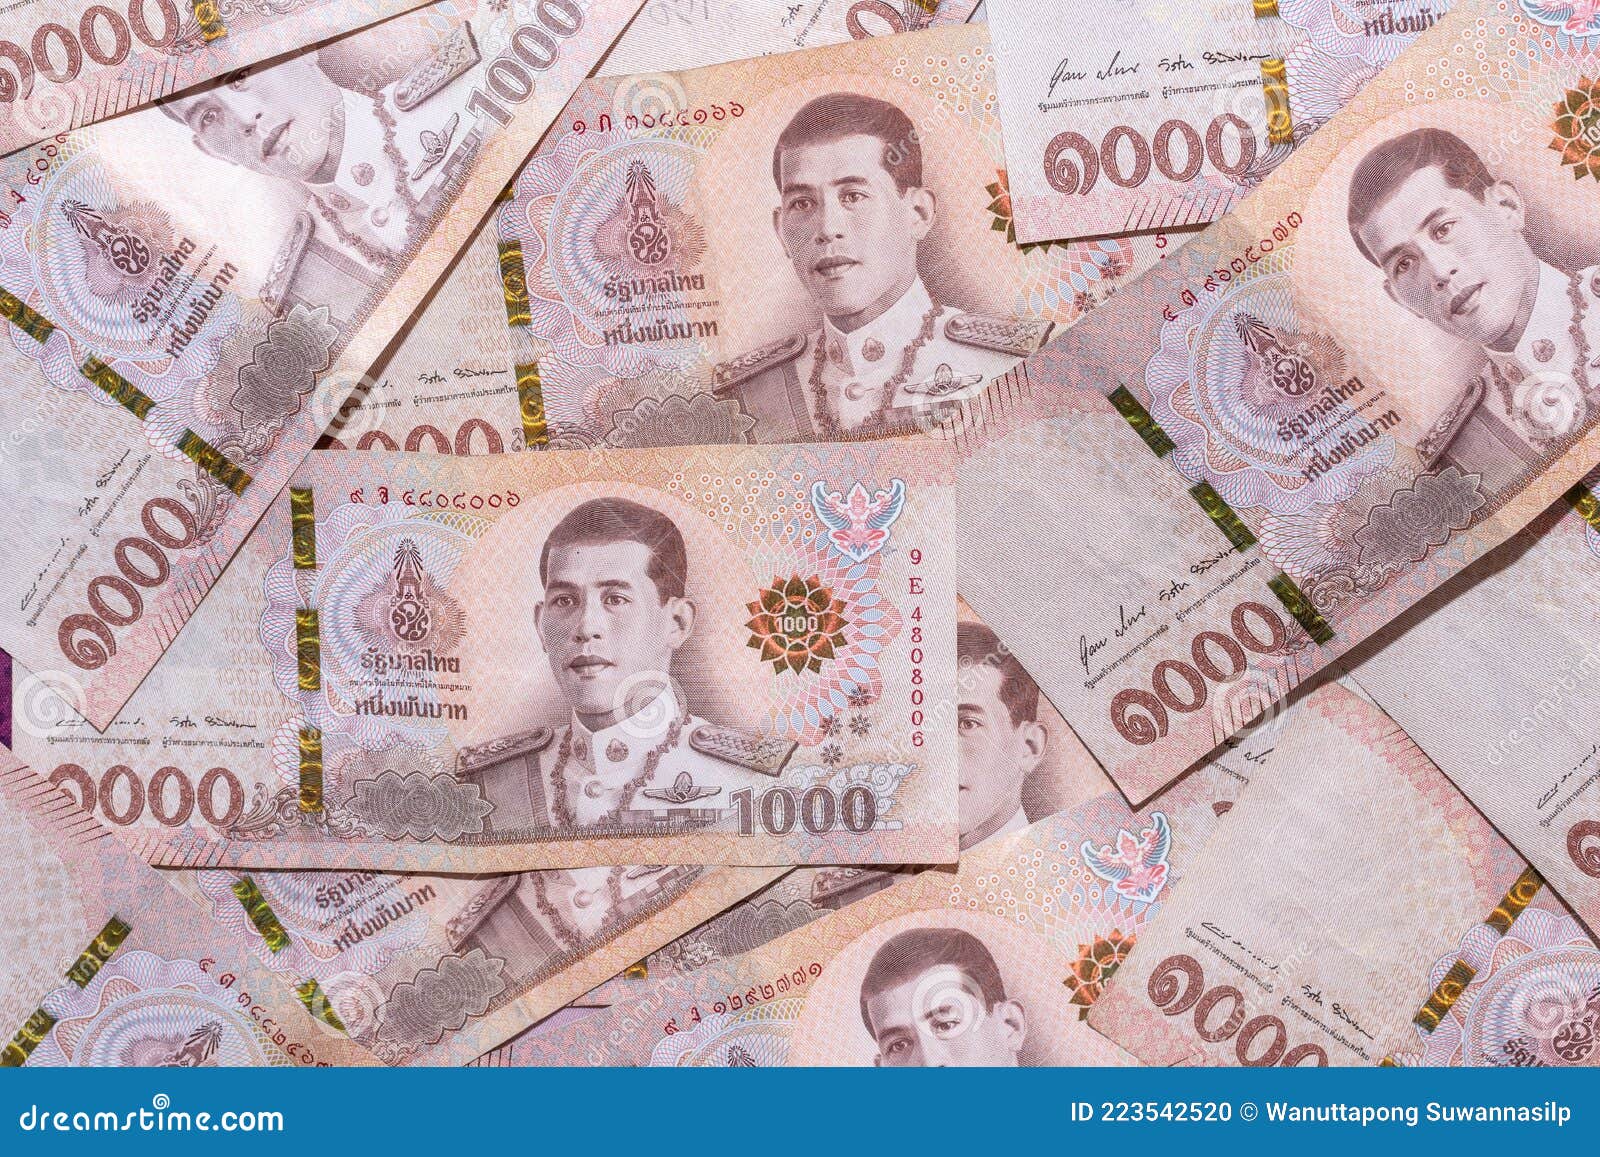 100泰国泰铢笔记的细节 库存照片. 图片 包括有 标本, 图象, 货币, 销售额, 投资, 储蓄, 替换 - 133959564